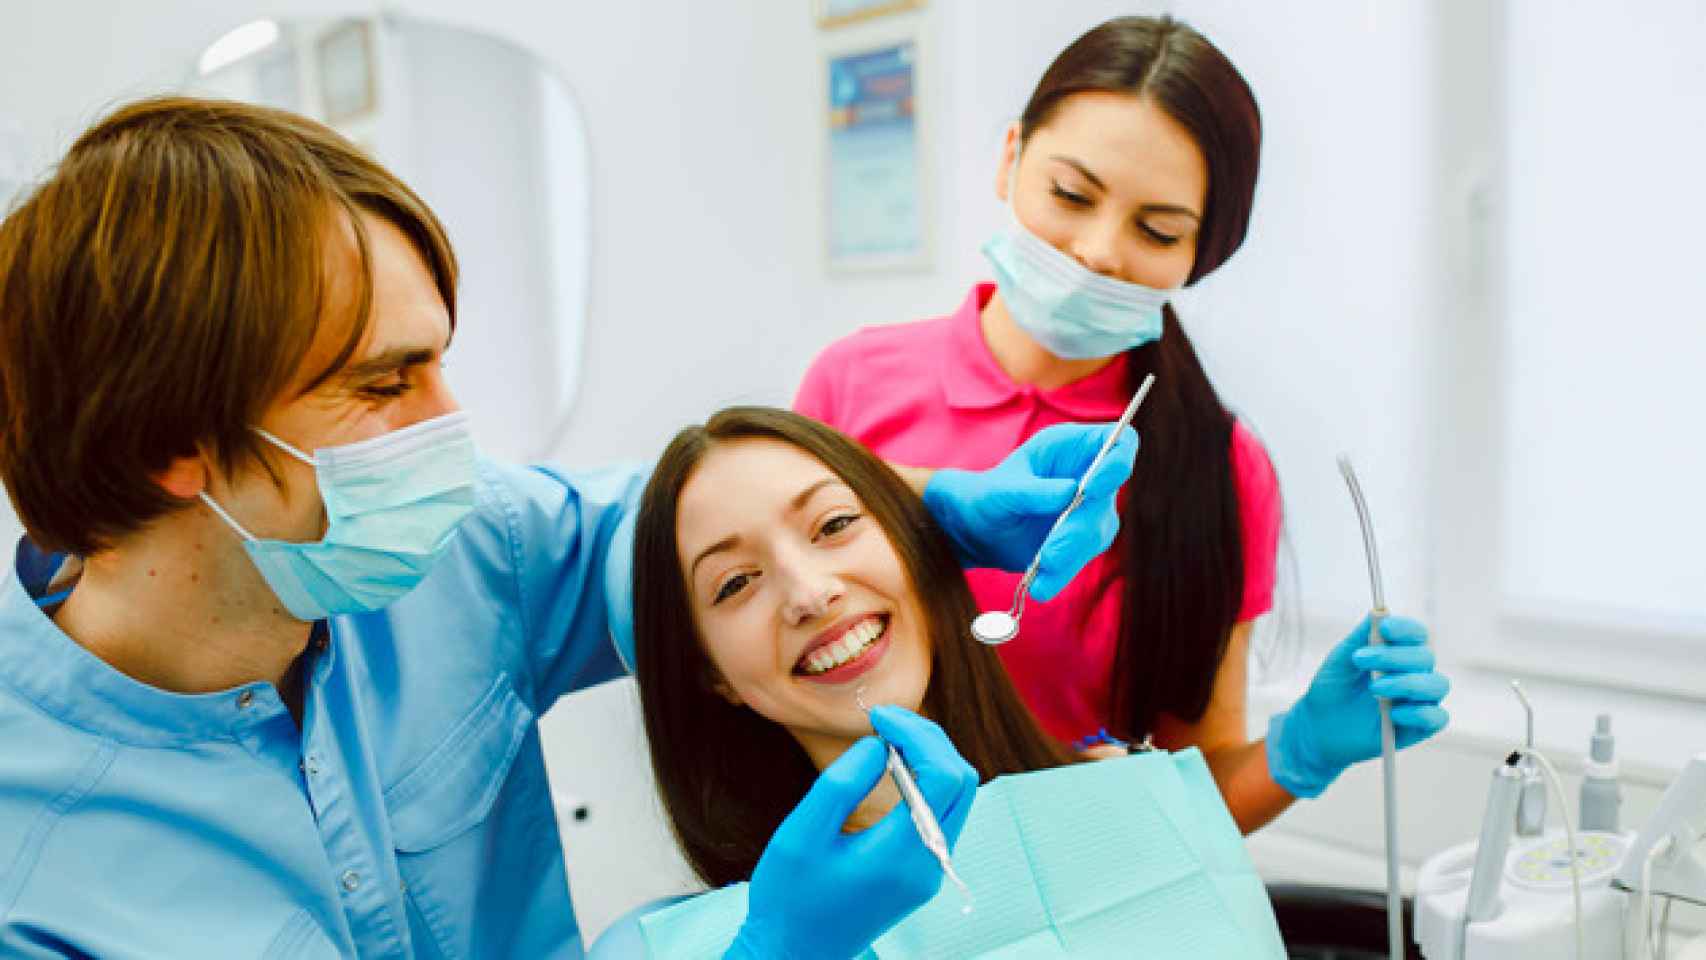 Dentista examinando las dientes de una paciente / CG